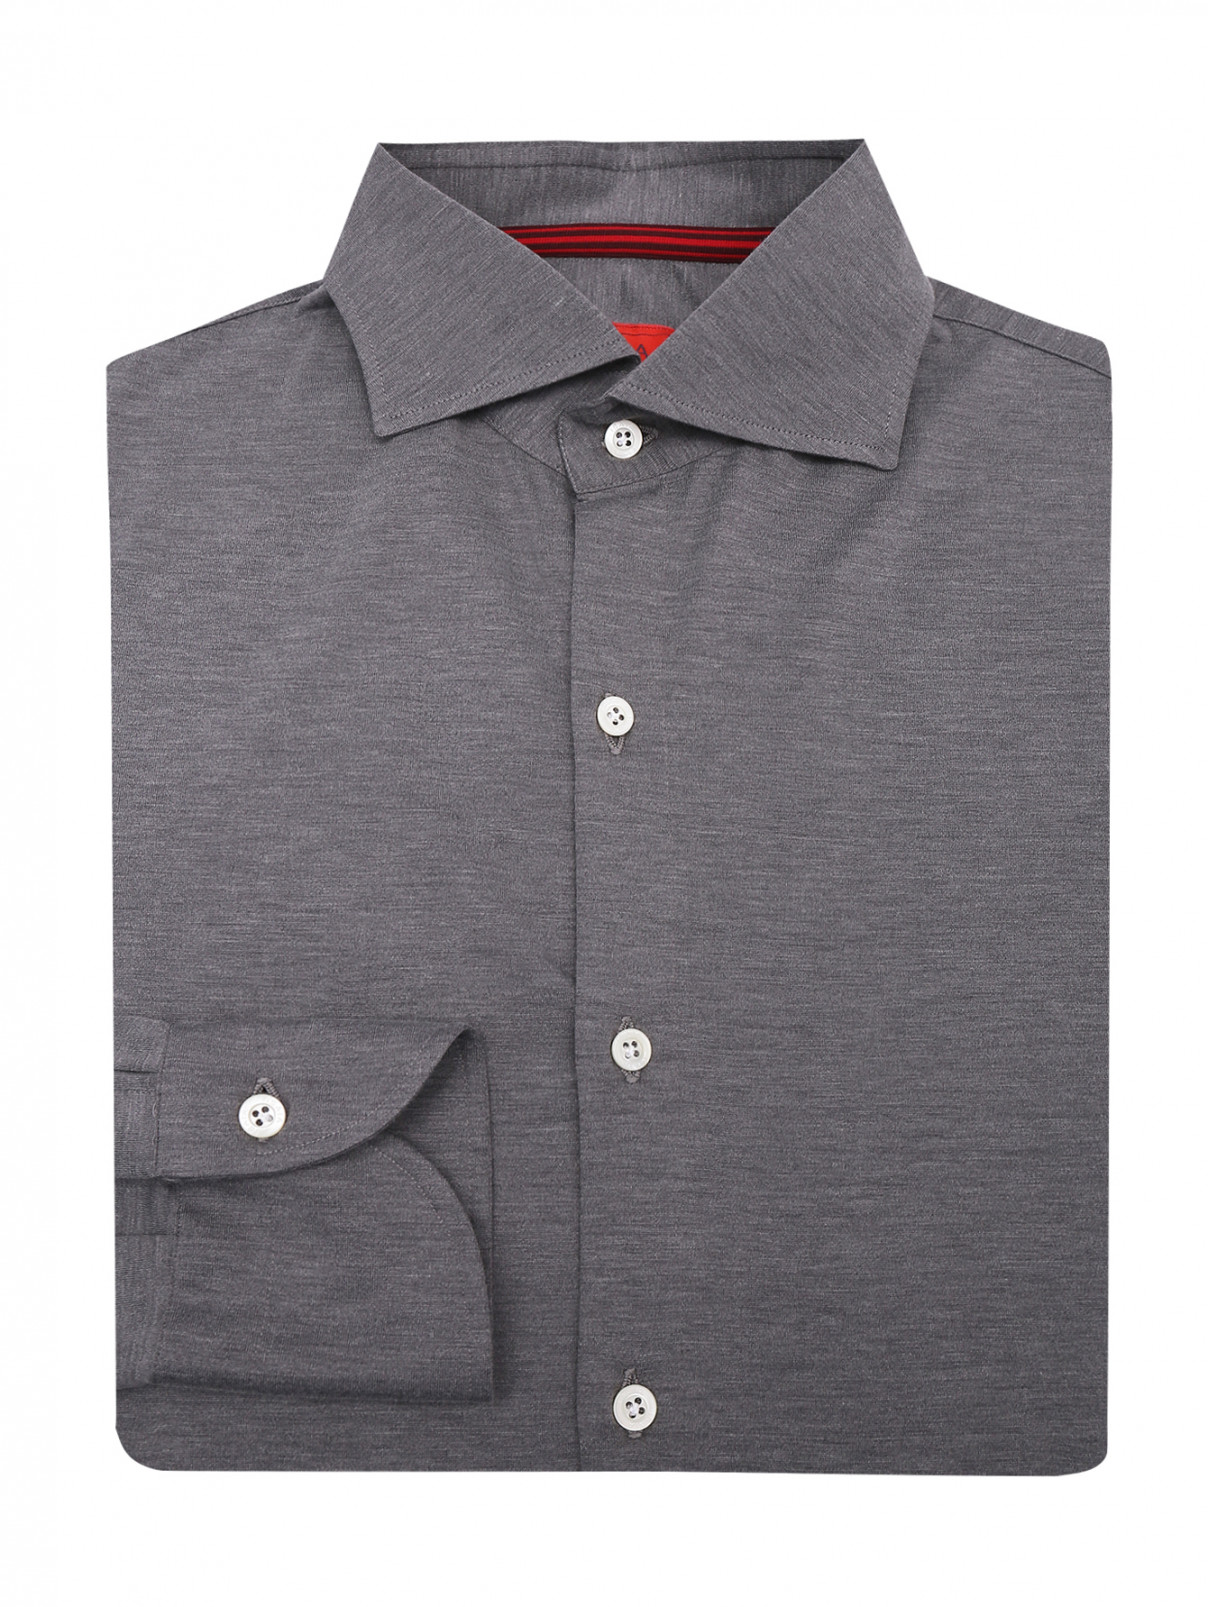 Однотонная рубашка из шелка и хлопка Isaia  –  Общий вид  – Цвет:  Серый